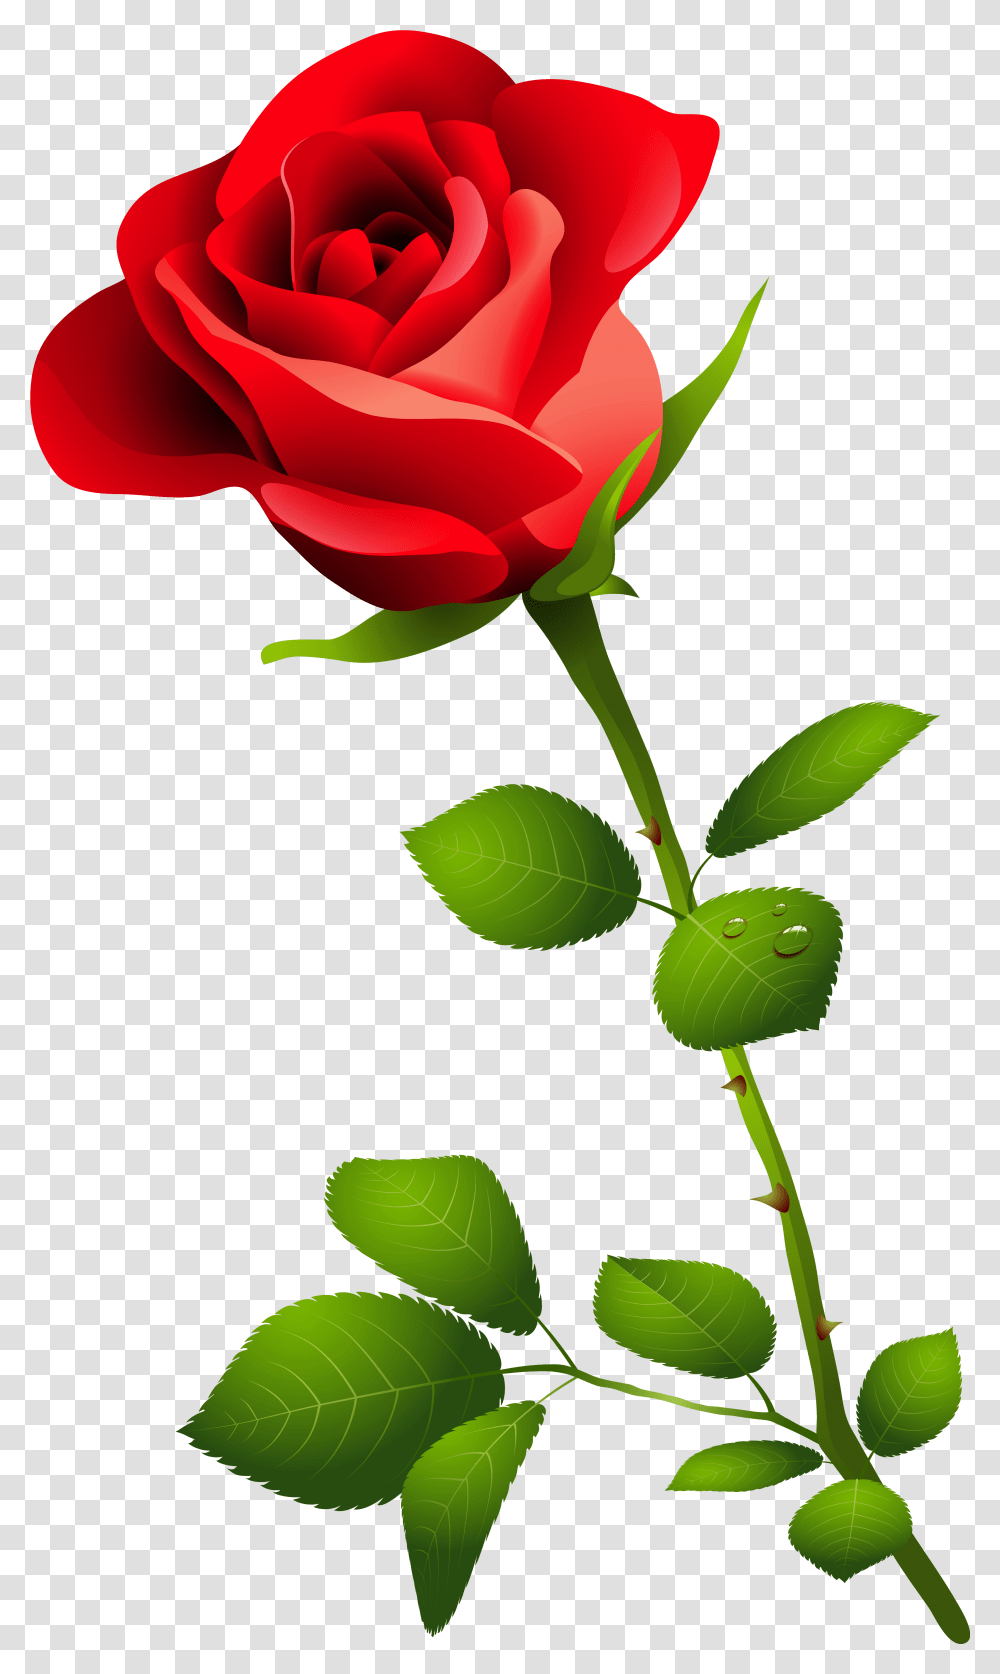 Single Long Stem Rose Drawing Pink Rose Image Hd, Plant, Flower, Blossom, Leaf Transparent Png